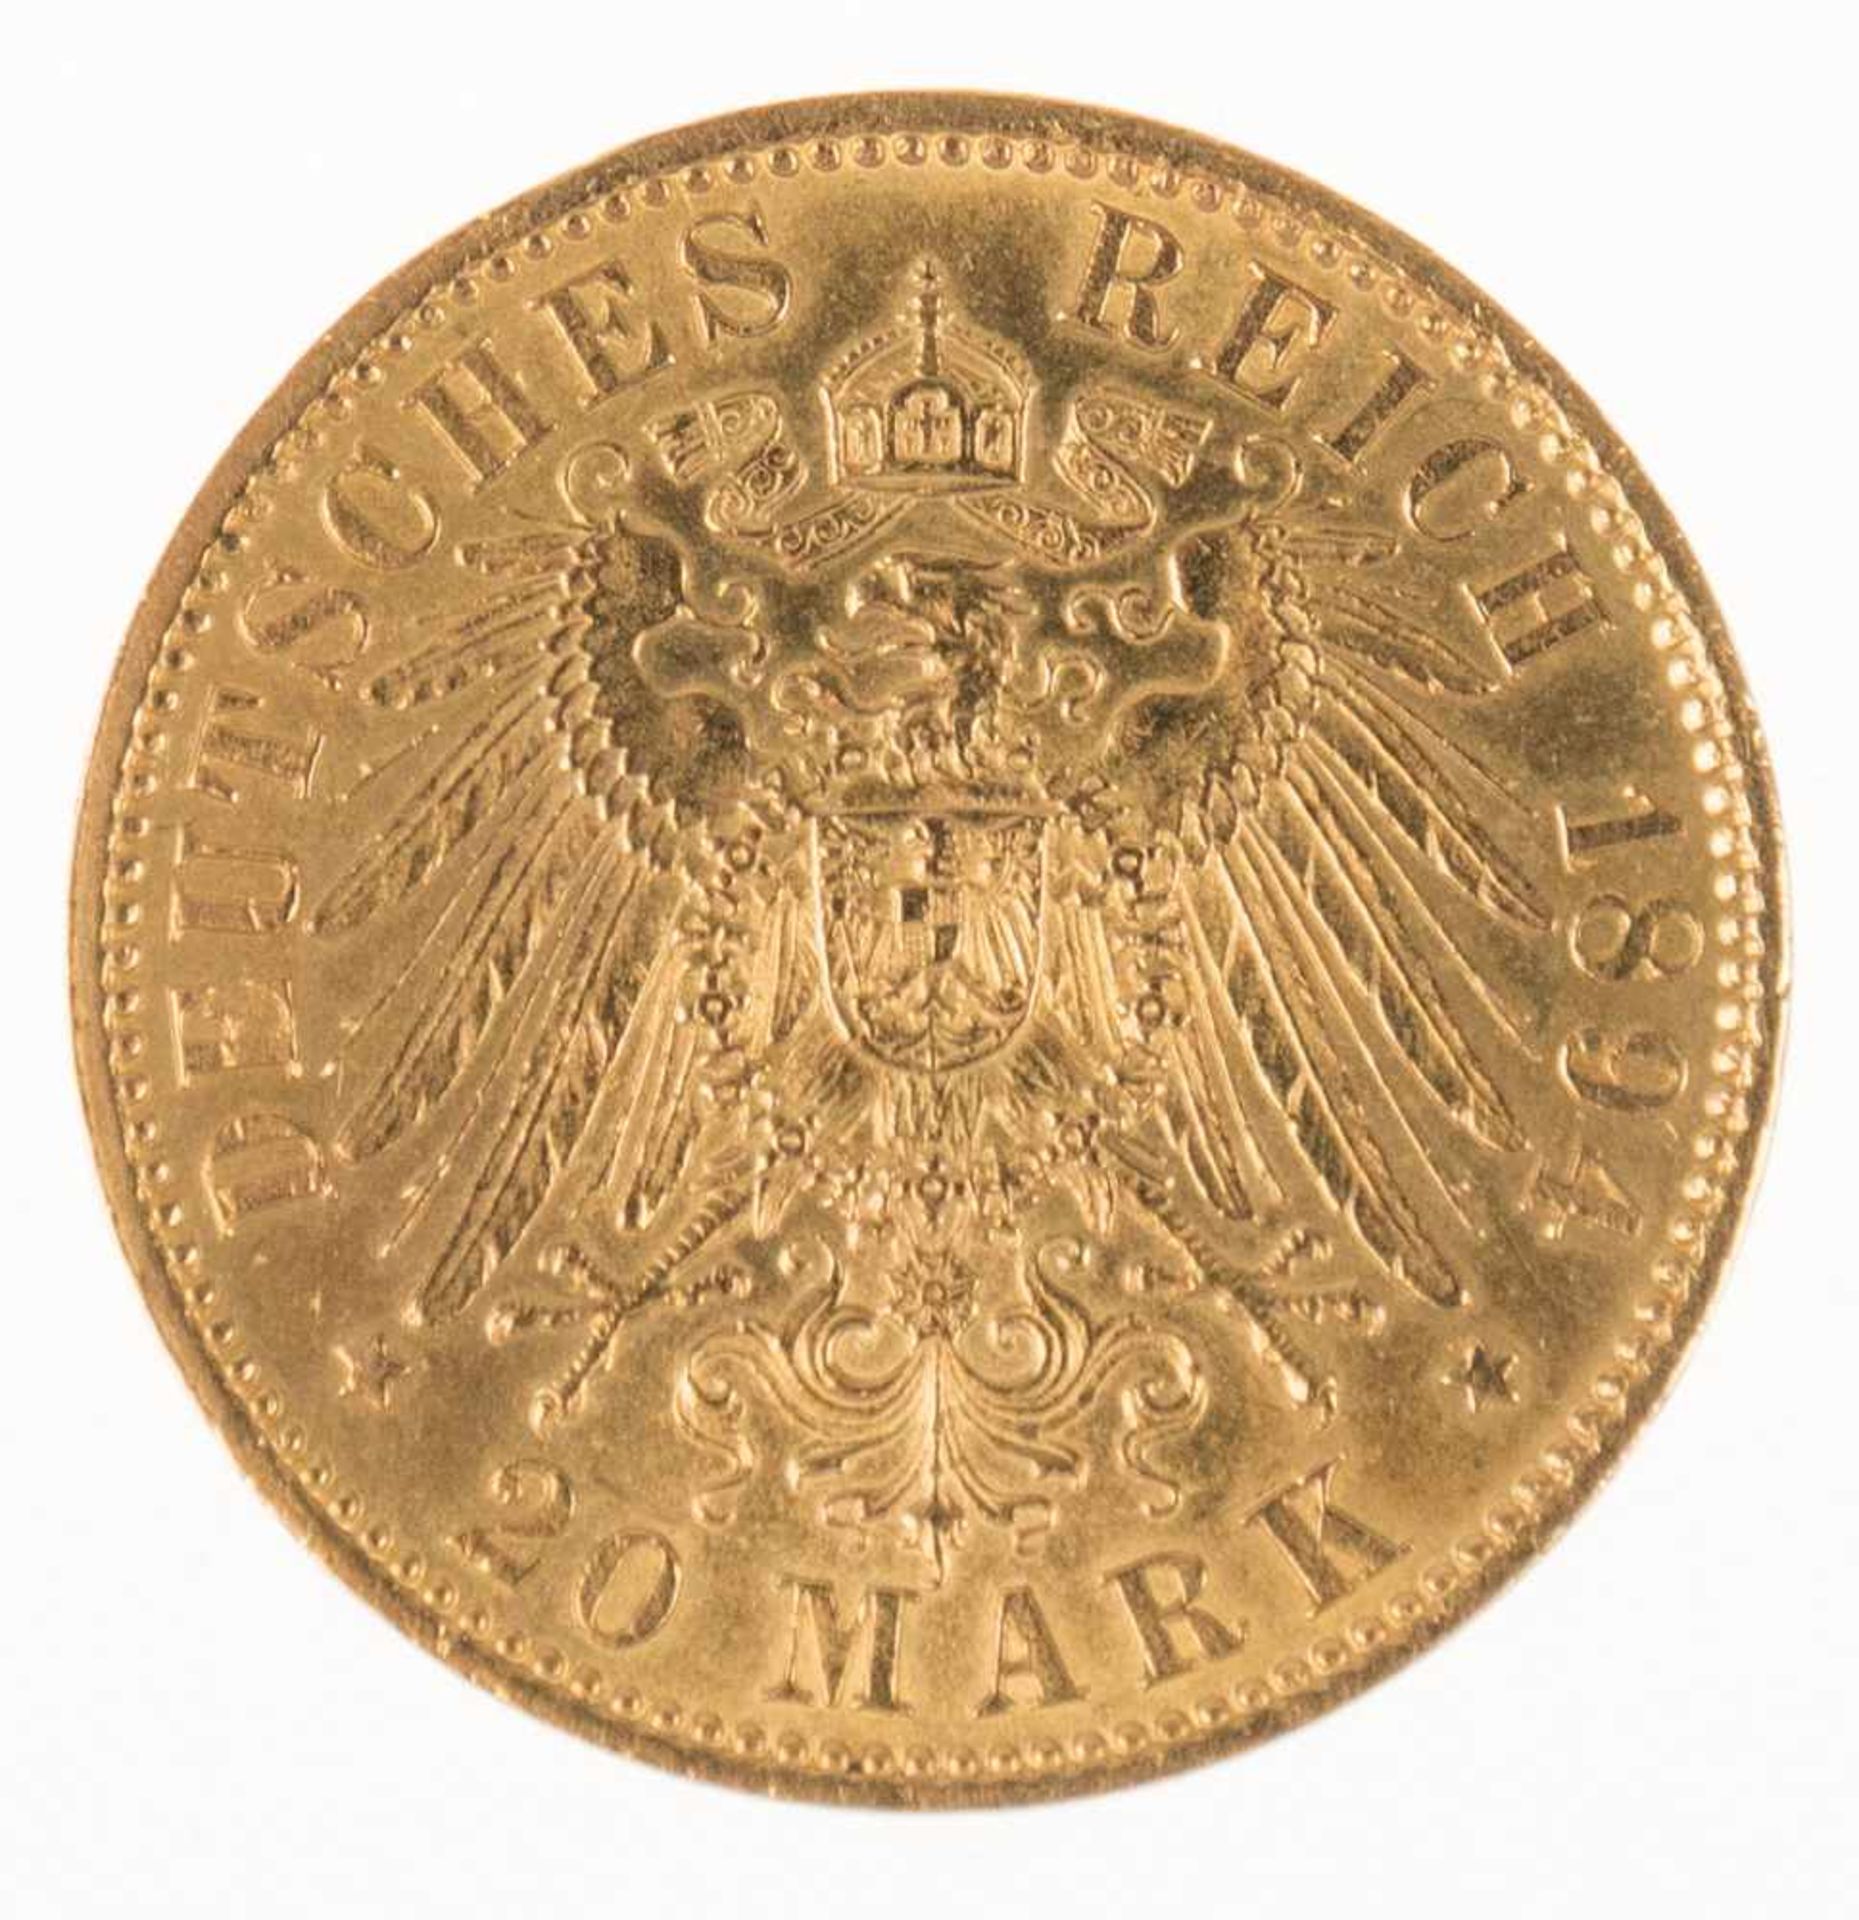 20 Mark, Gold, Deutsches Reich, 1894 A, Wilhelm II.